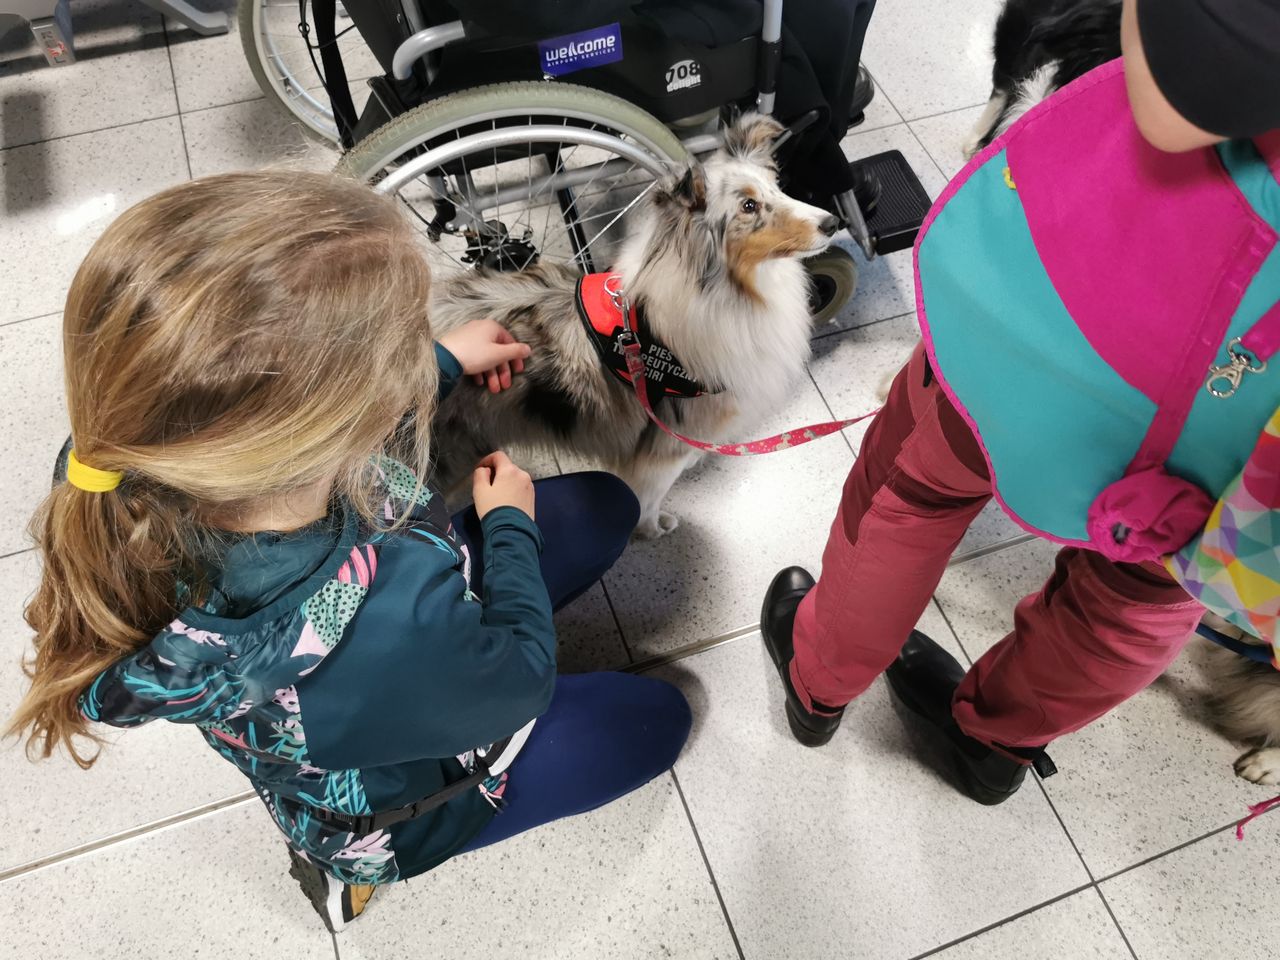 Lotniskowe psy największy fan club mają wśród dzieci